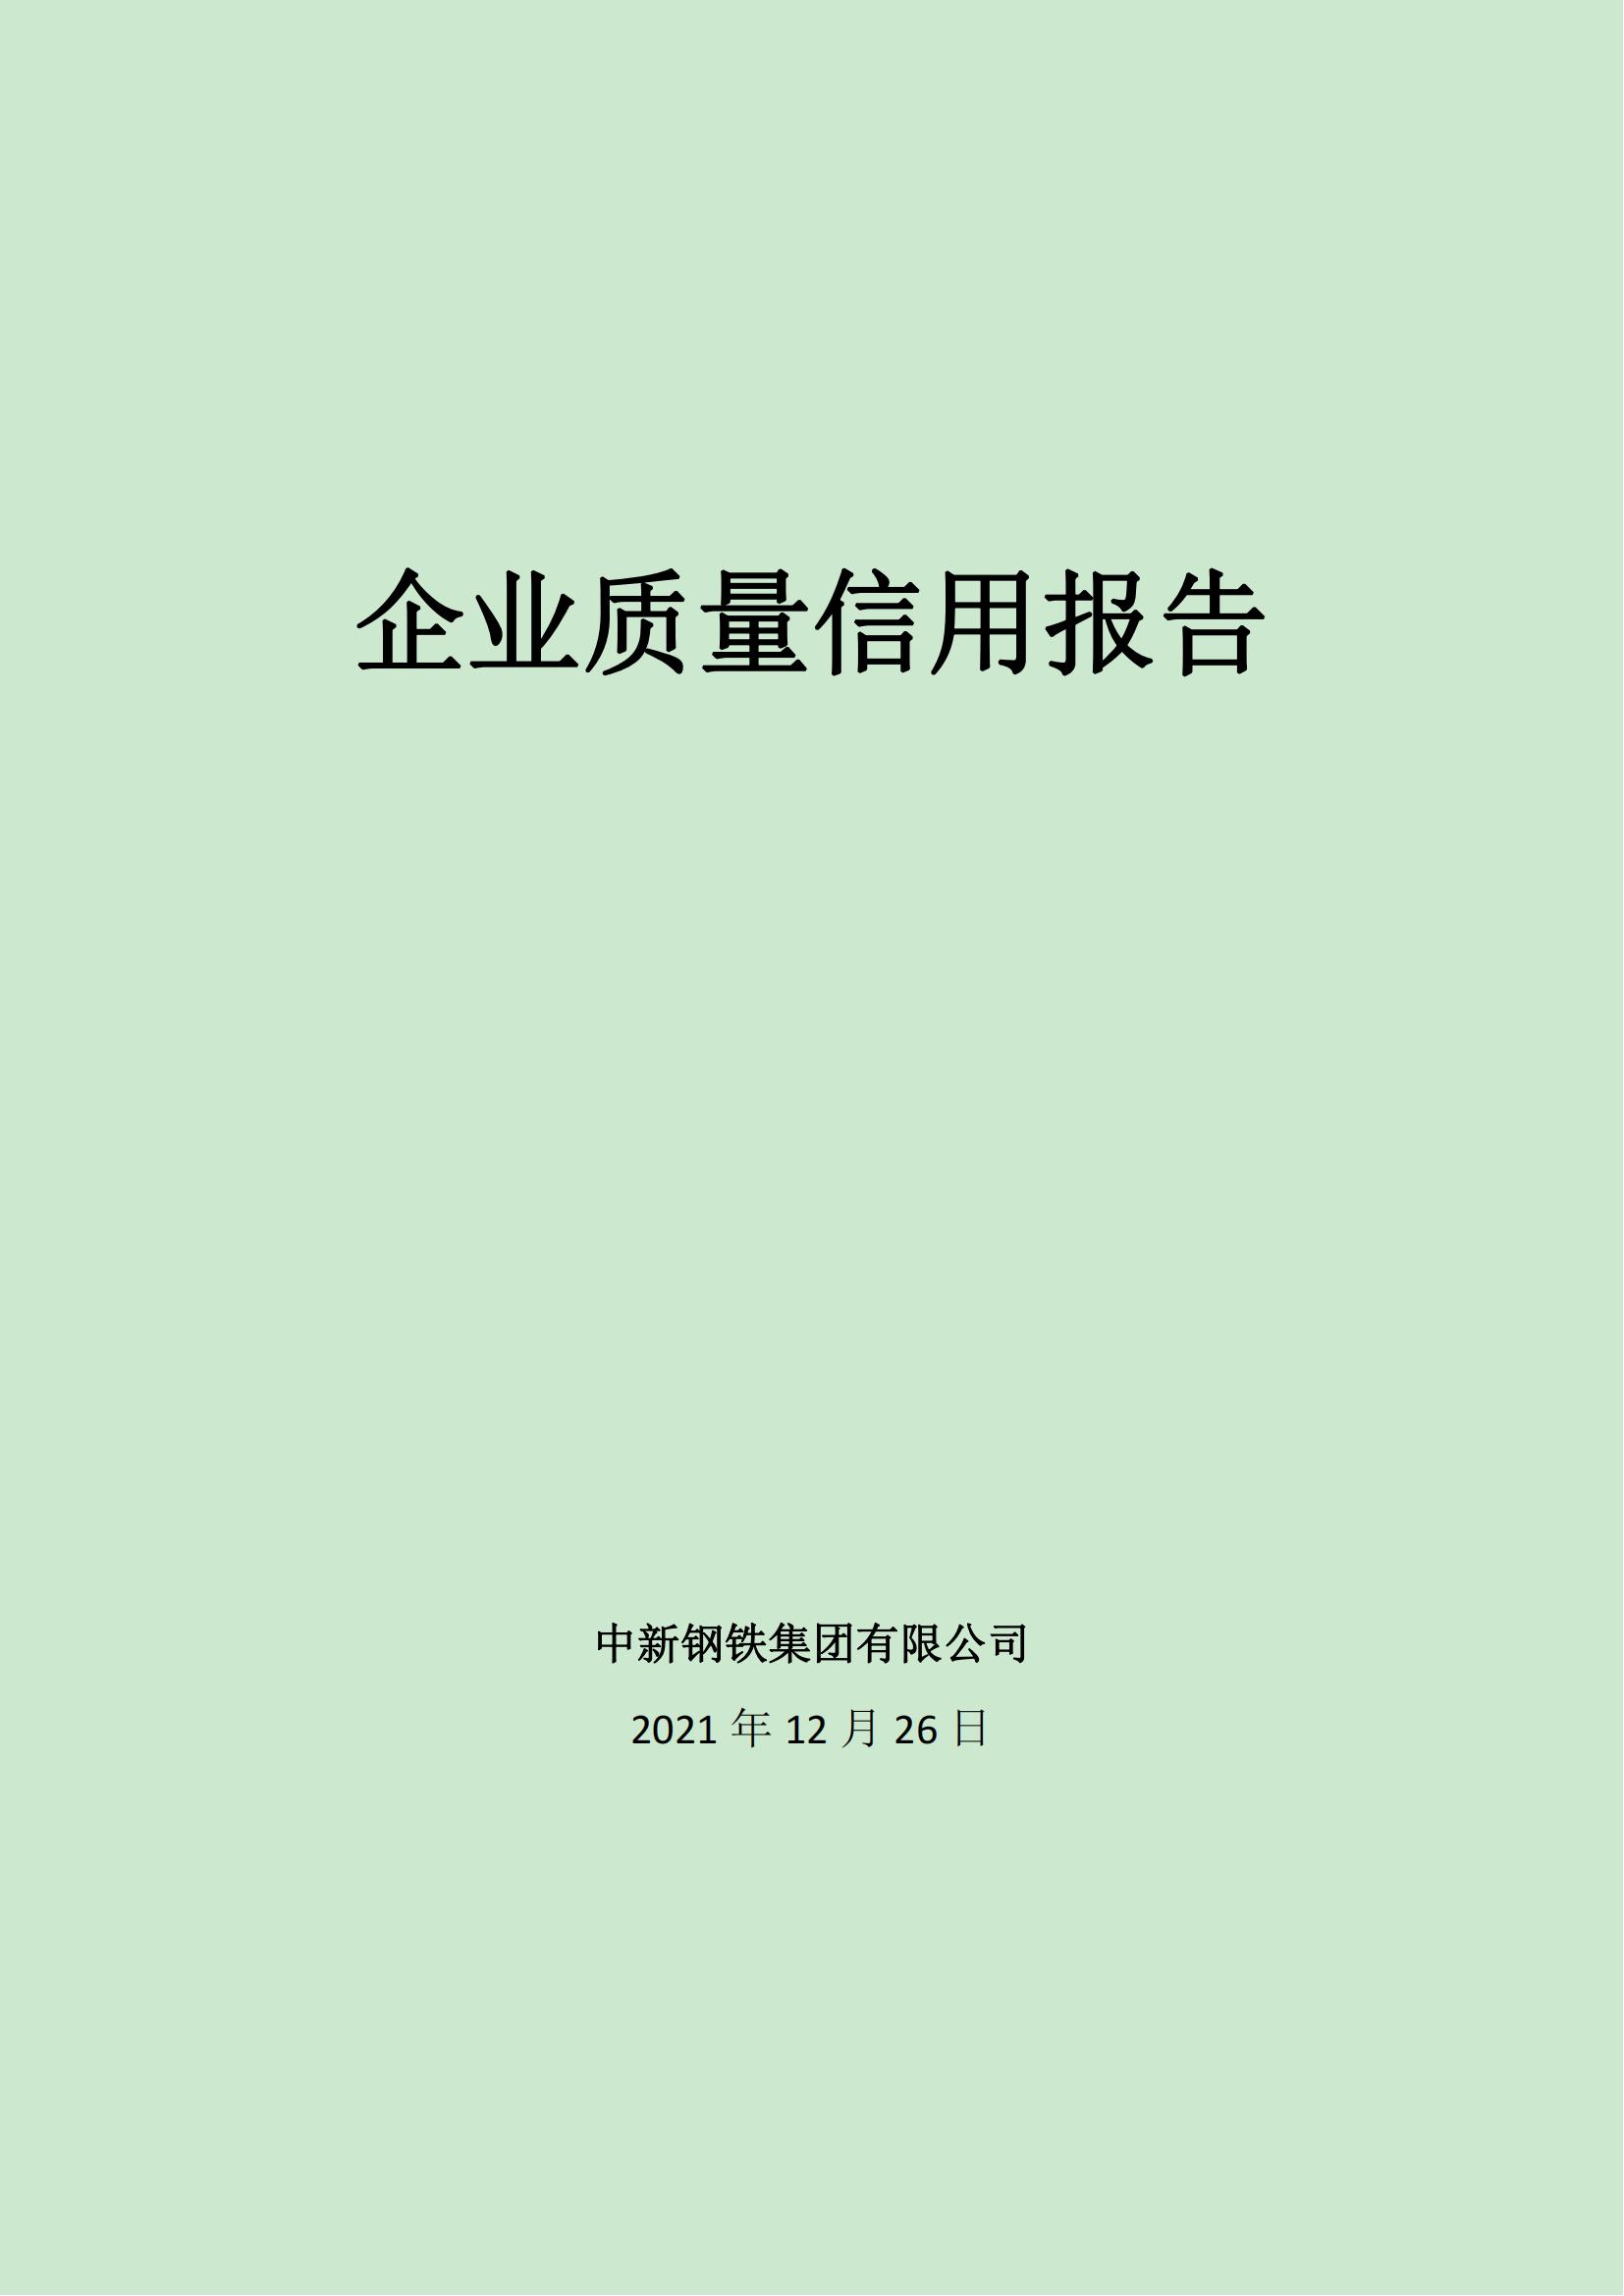 中新钢铁集团有限公司质量信用报告（2021版）(1)(1)_00